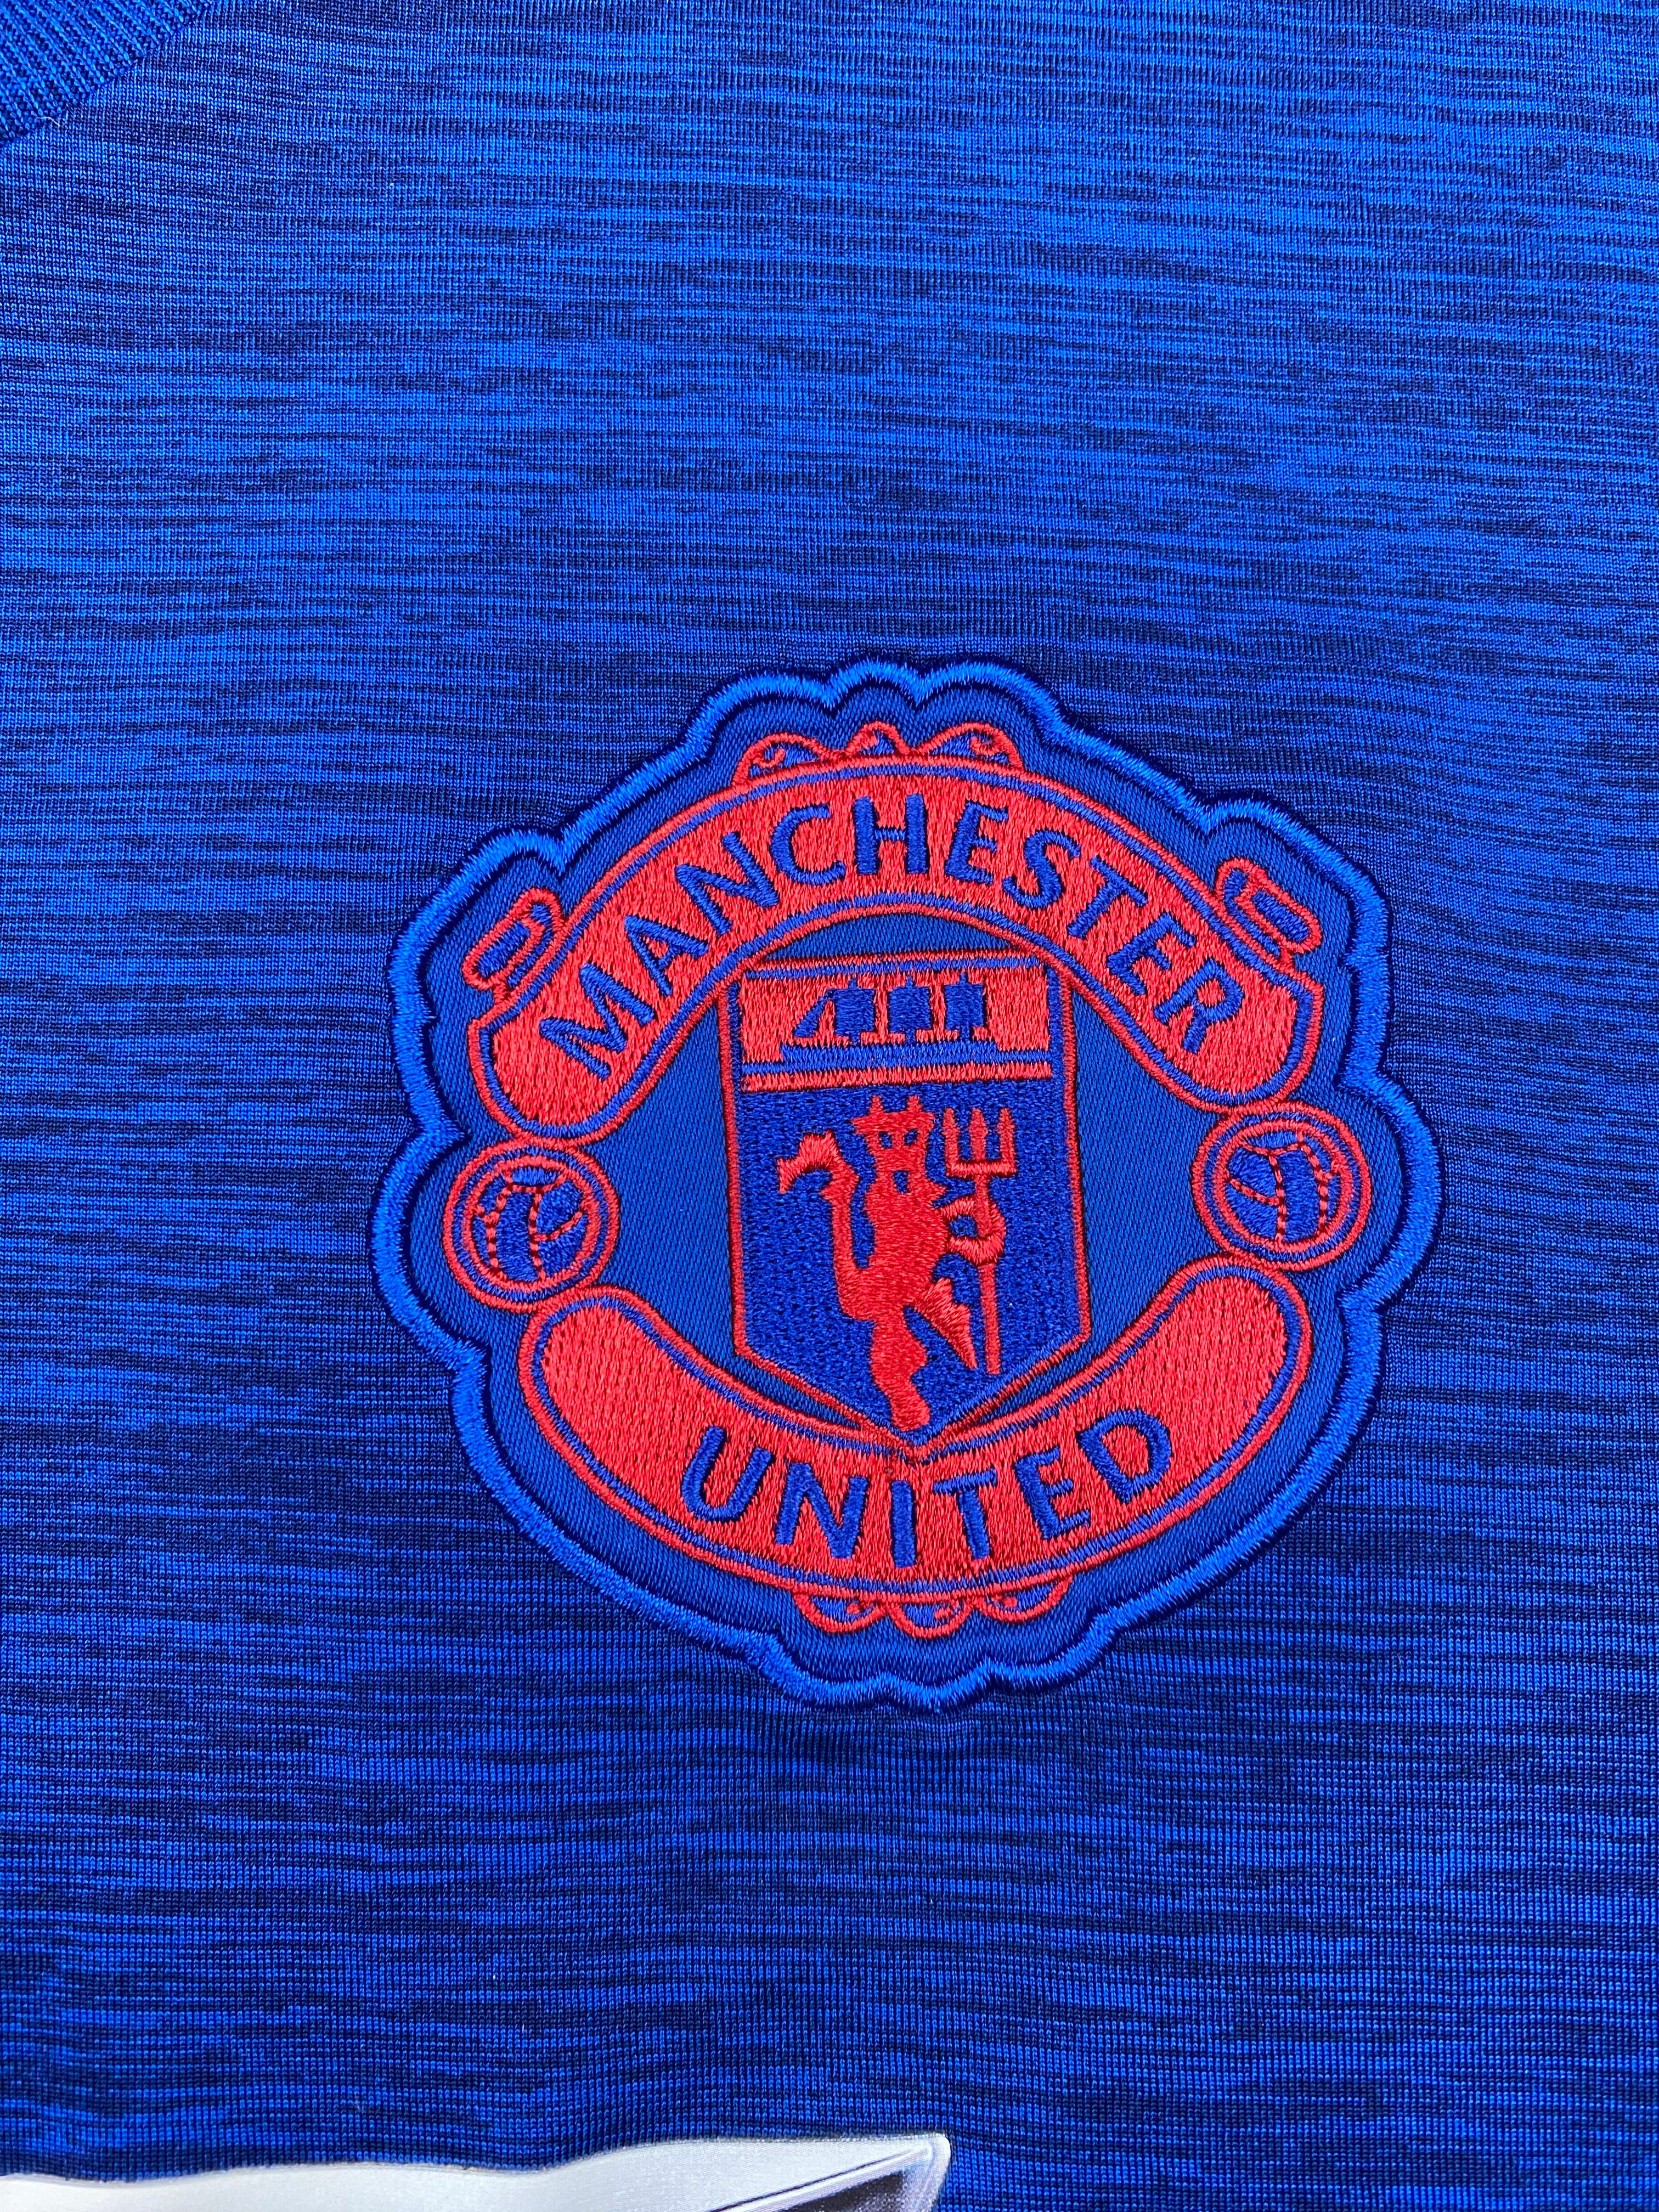 2016/17 Manchester United Away Shirt (XL) 9/10